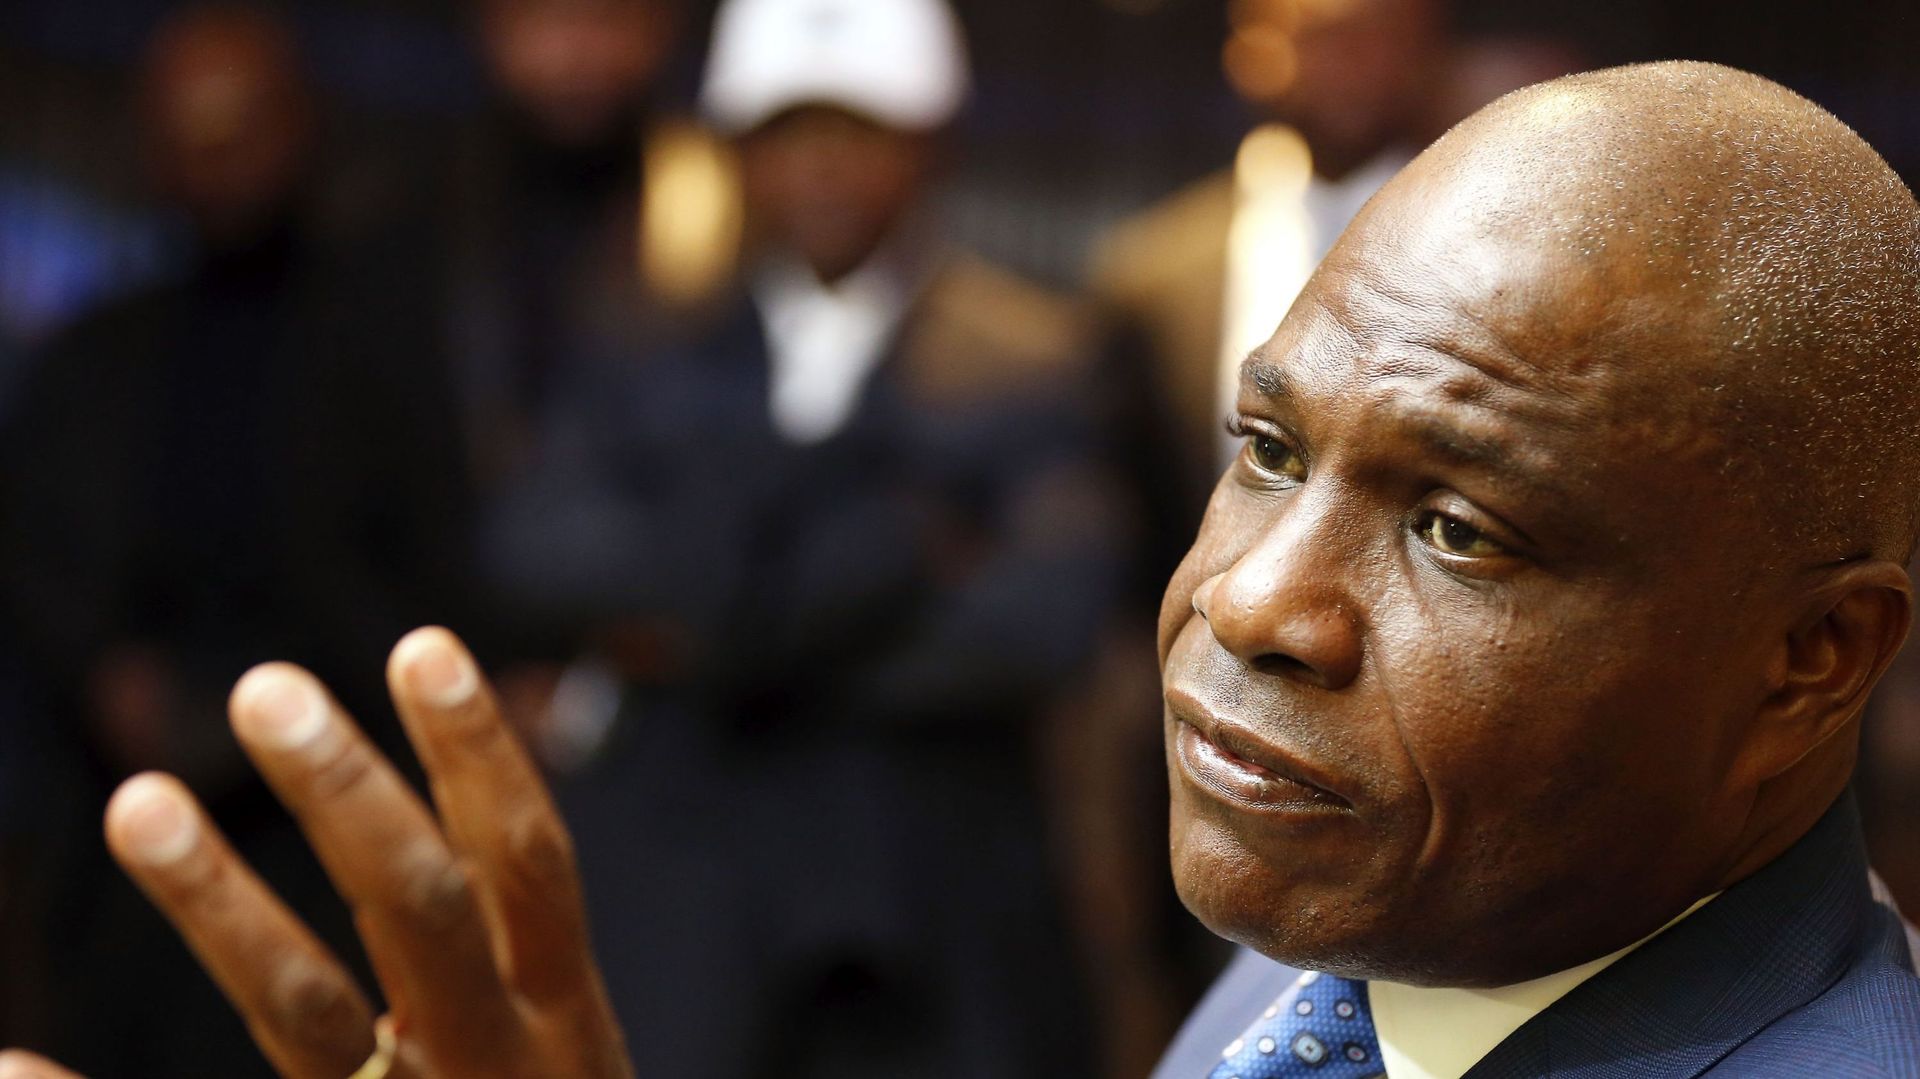 RDC : l’opposant Martin Fayulu lance un appel à manifester pour "l’unité nationale et l’intégrité territoriale"